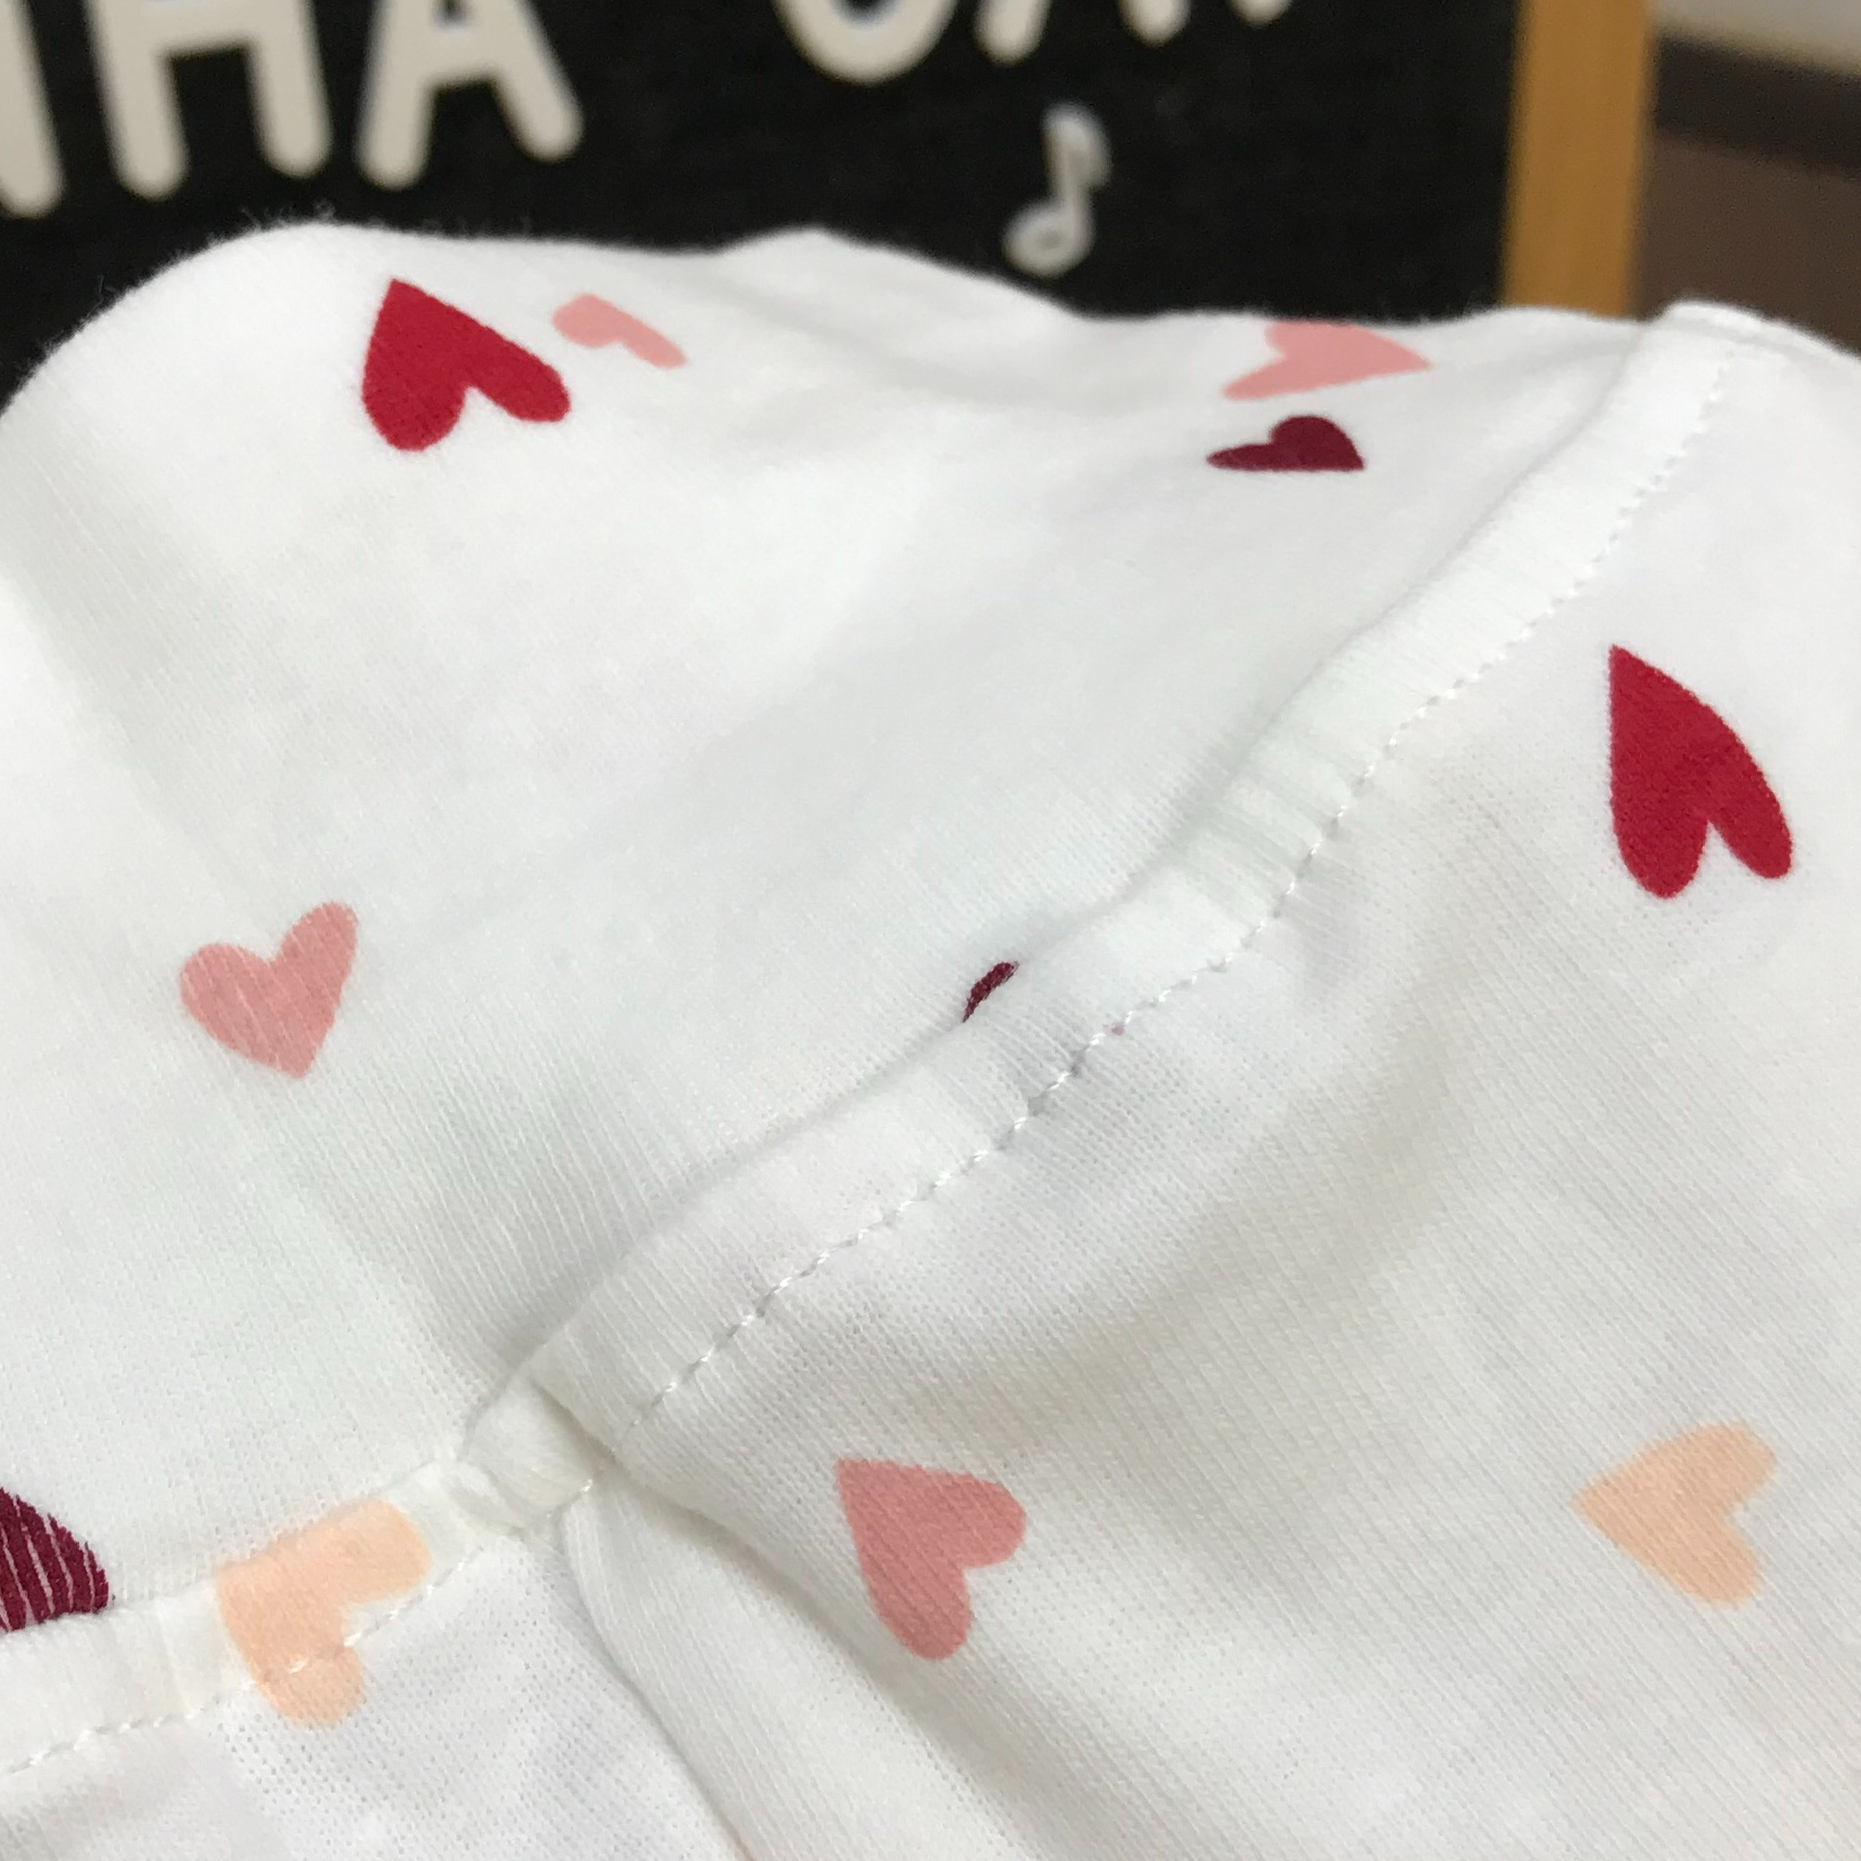 Set quần áo sơ sinh 0-3m cotton borip xuất họa tiết tim đỏ mềm